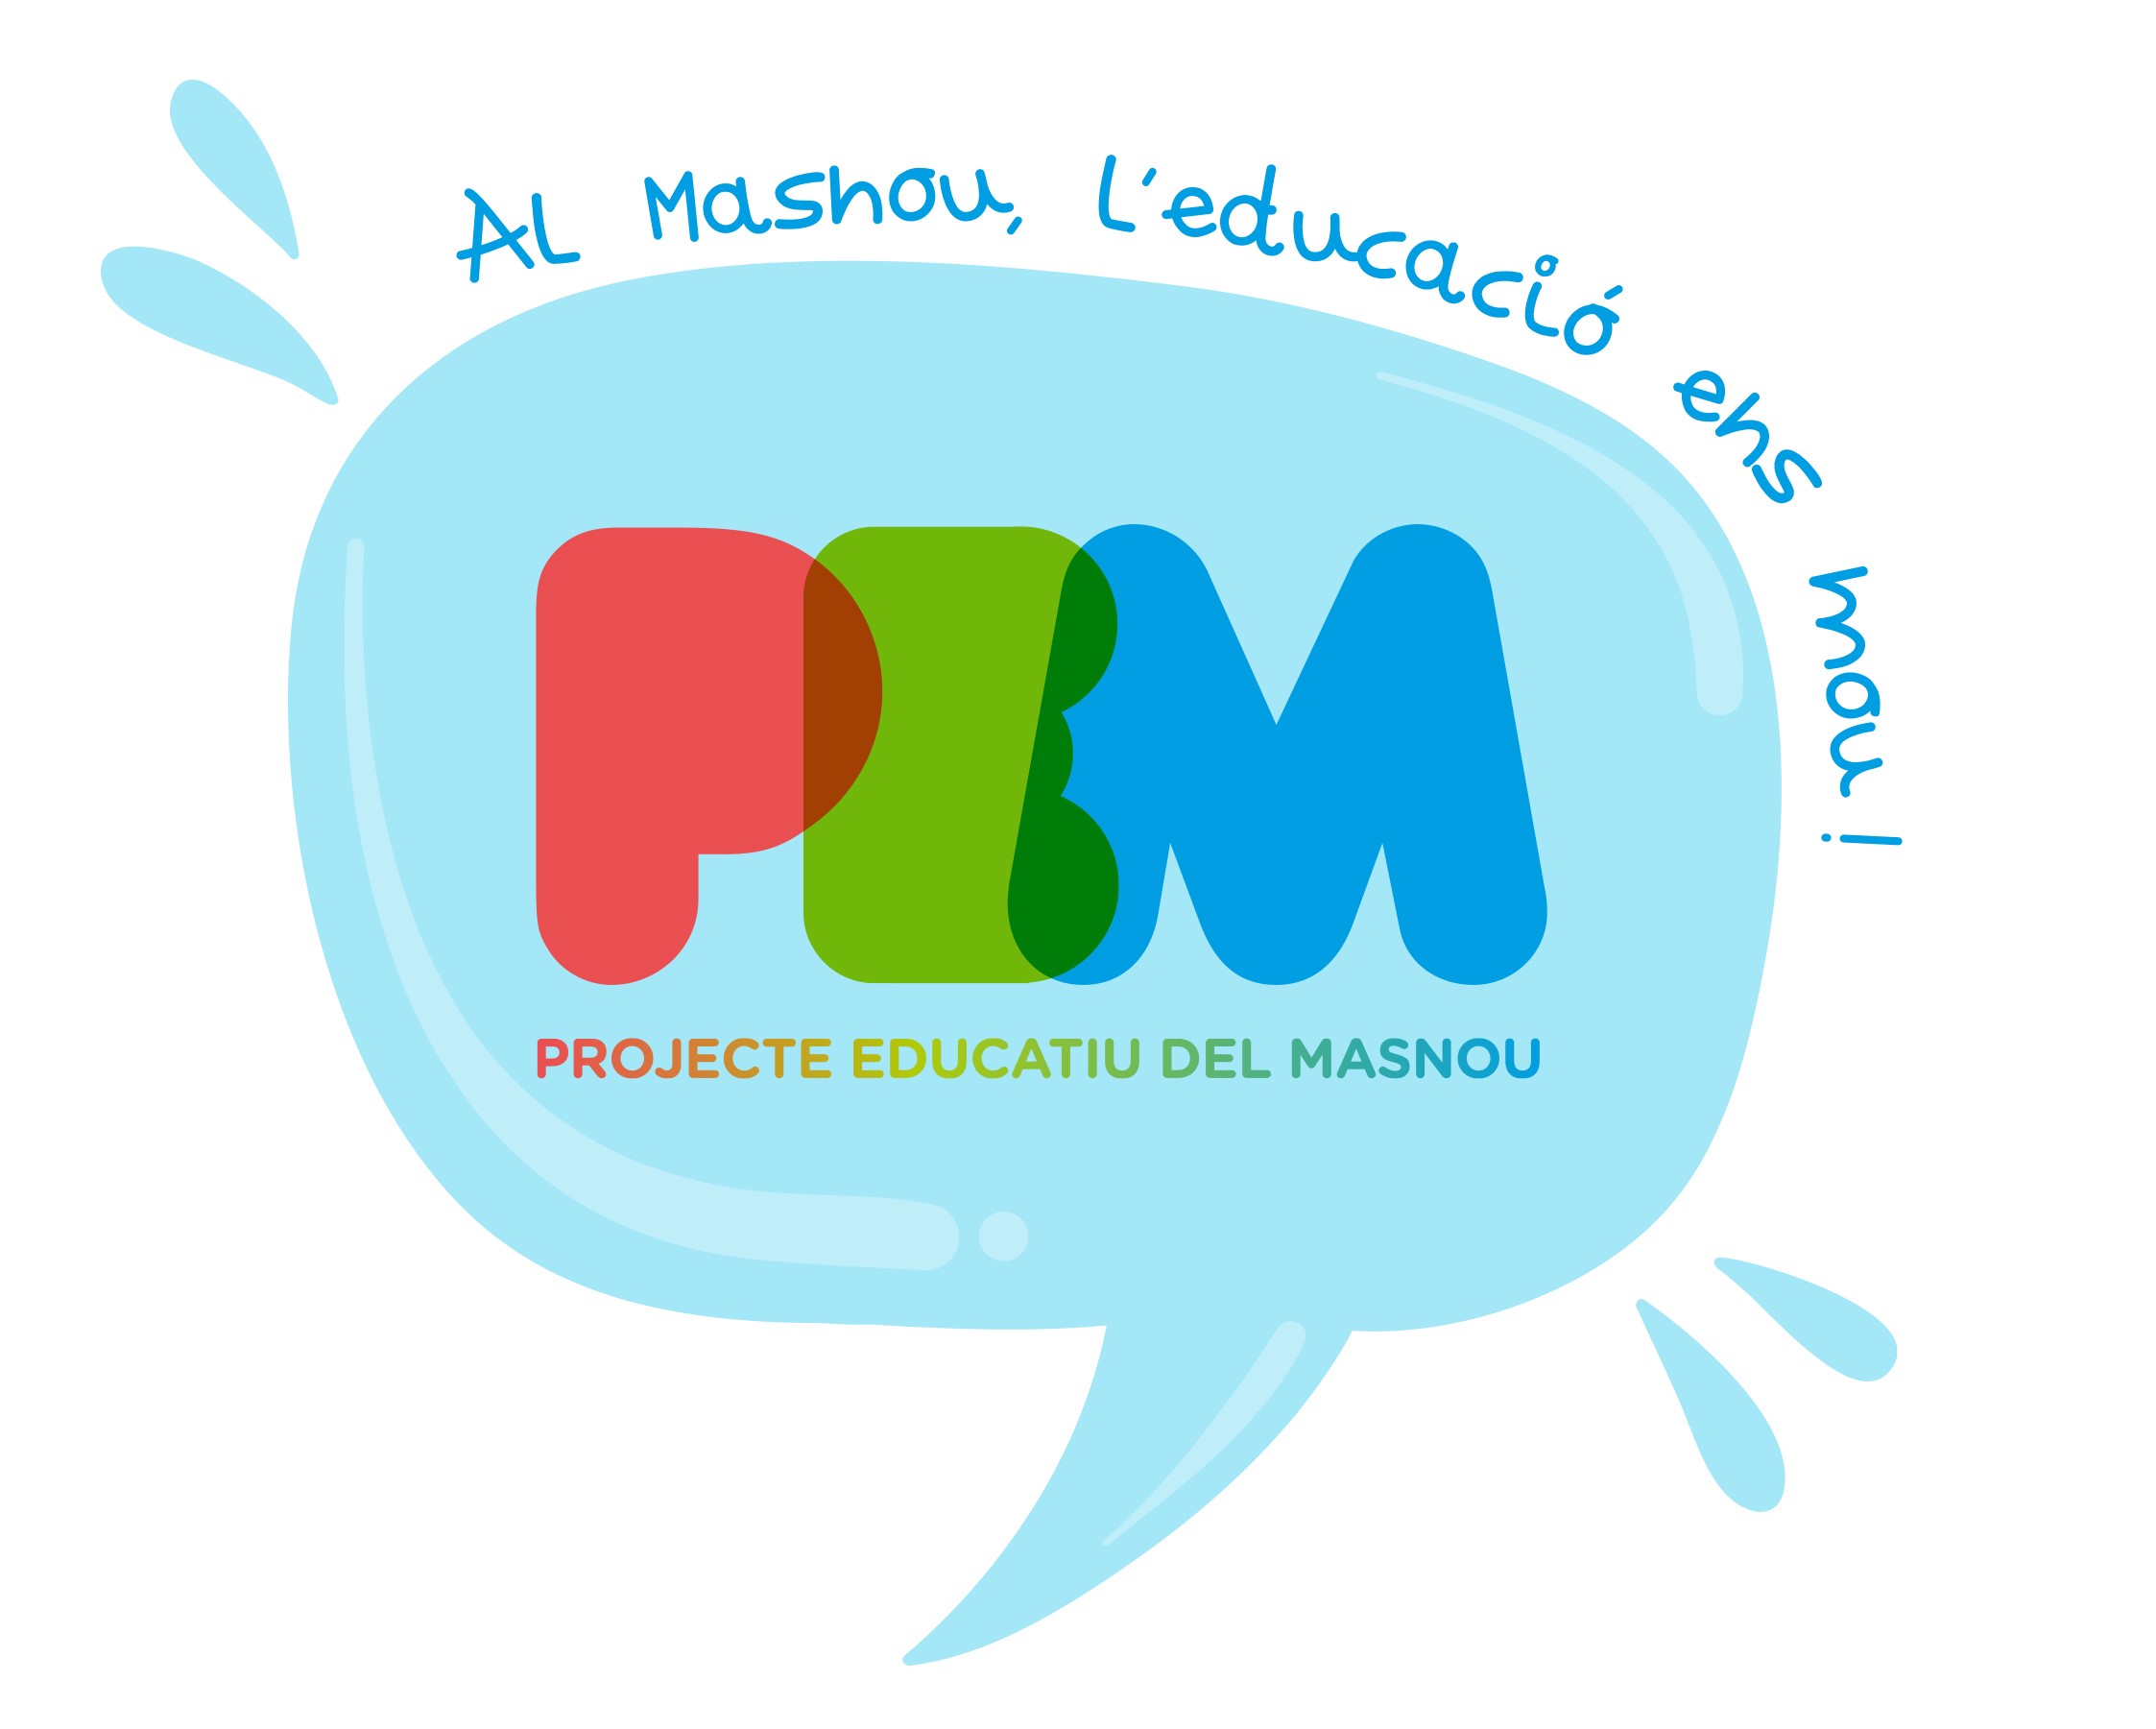 Grup Impulsor del Projecte Educatiu del Masnou